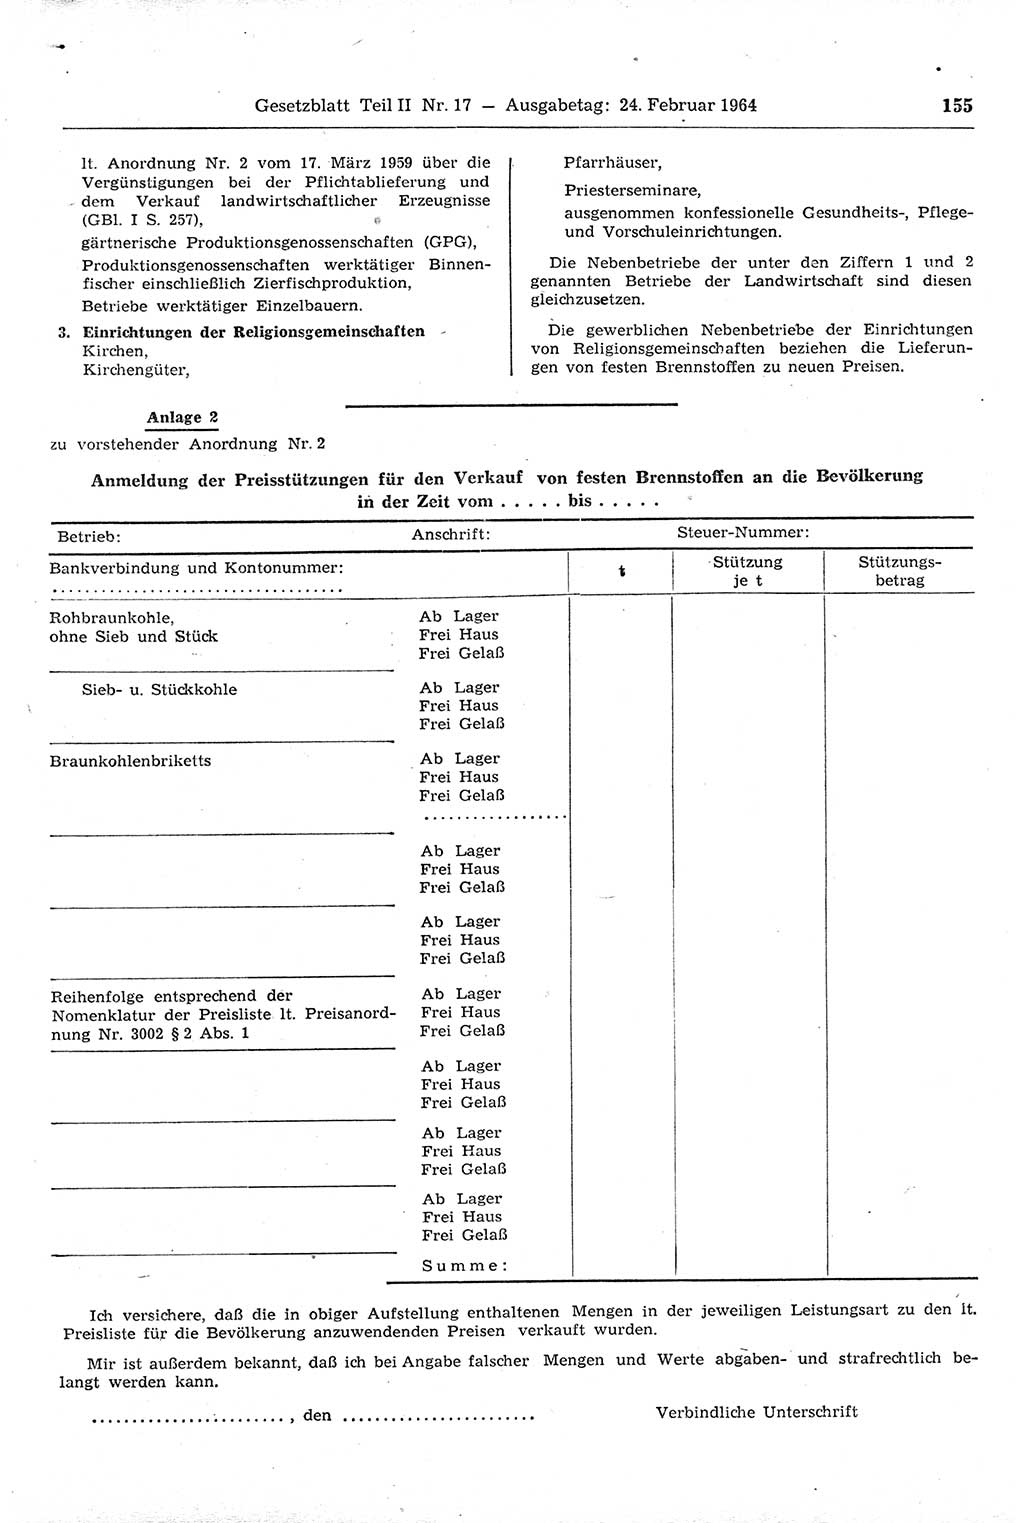 Gesetzblatt (GBl.) der Deutschen Demokratischen Republik (DDR) Teil ⅠⅠ 1964, Seite 155 (GBl. DDR ⅠⅠ 1964, S. 155)